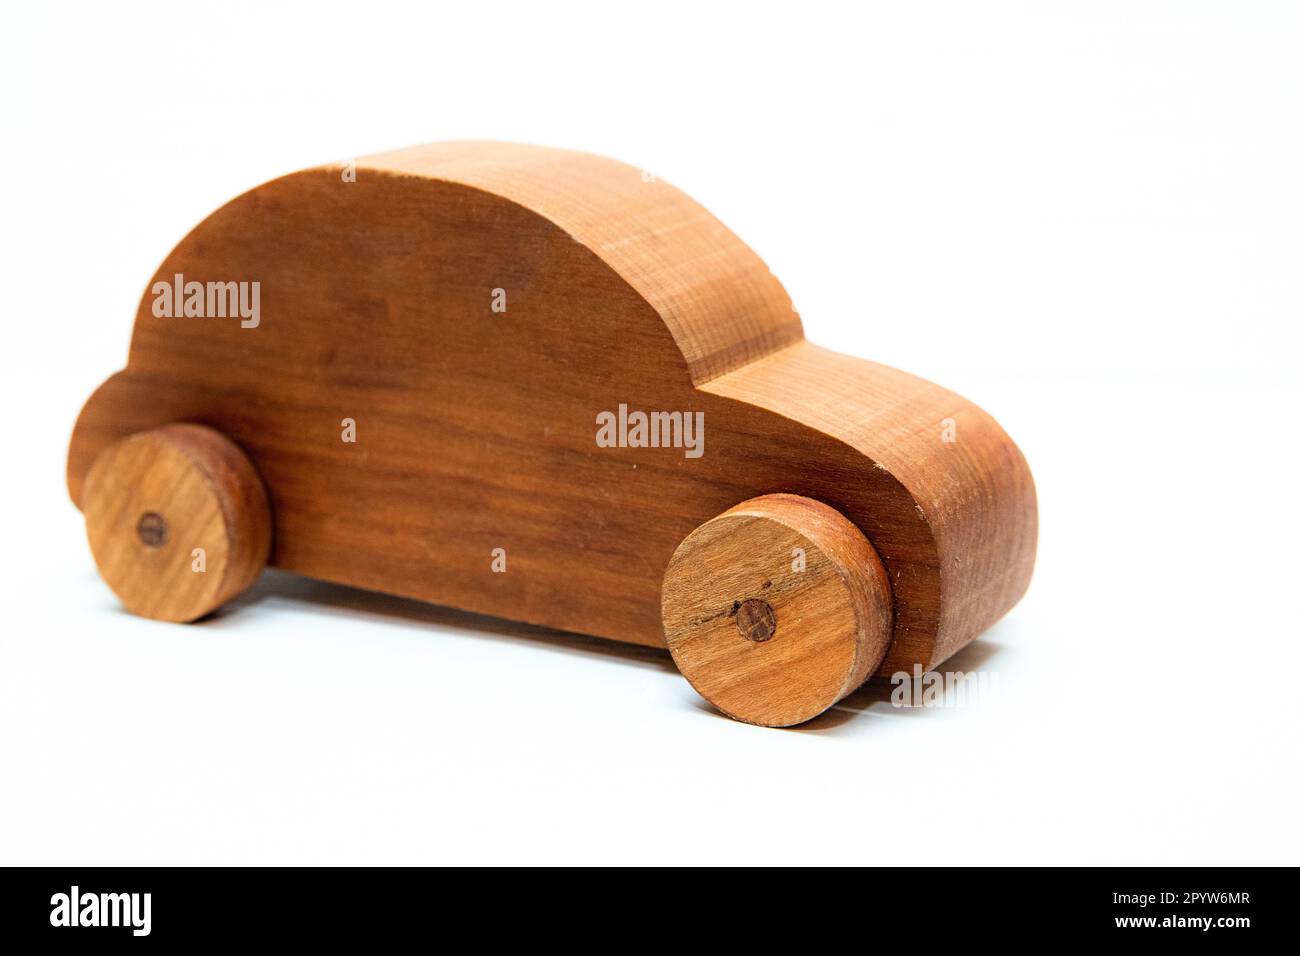 voiture en bois de jouet en bois de cerisier, isolée sur un fond blanc fait par un charpentier, menuiserie, travail du bois, travail du bois Banque D'Images